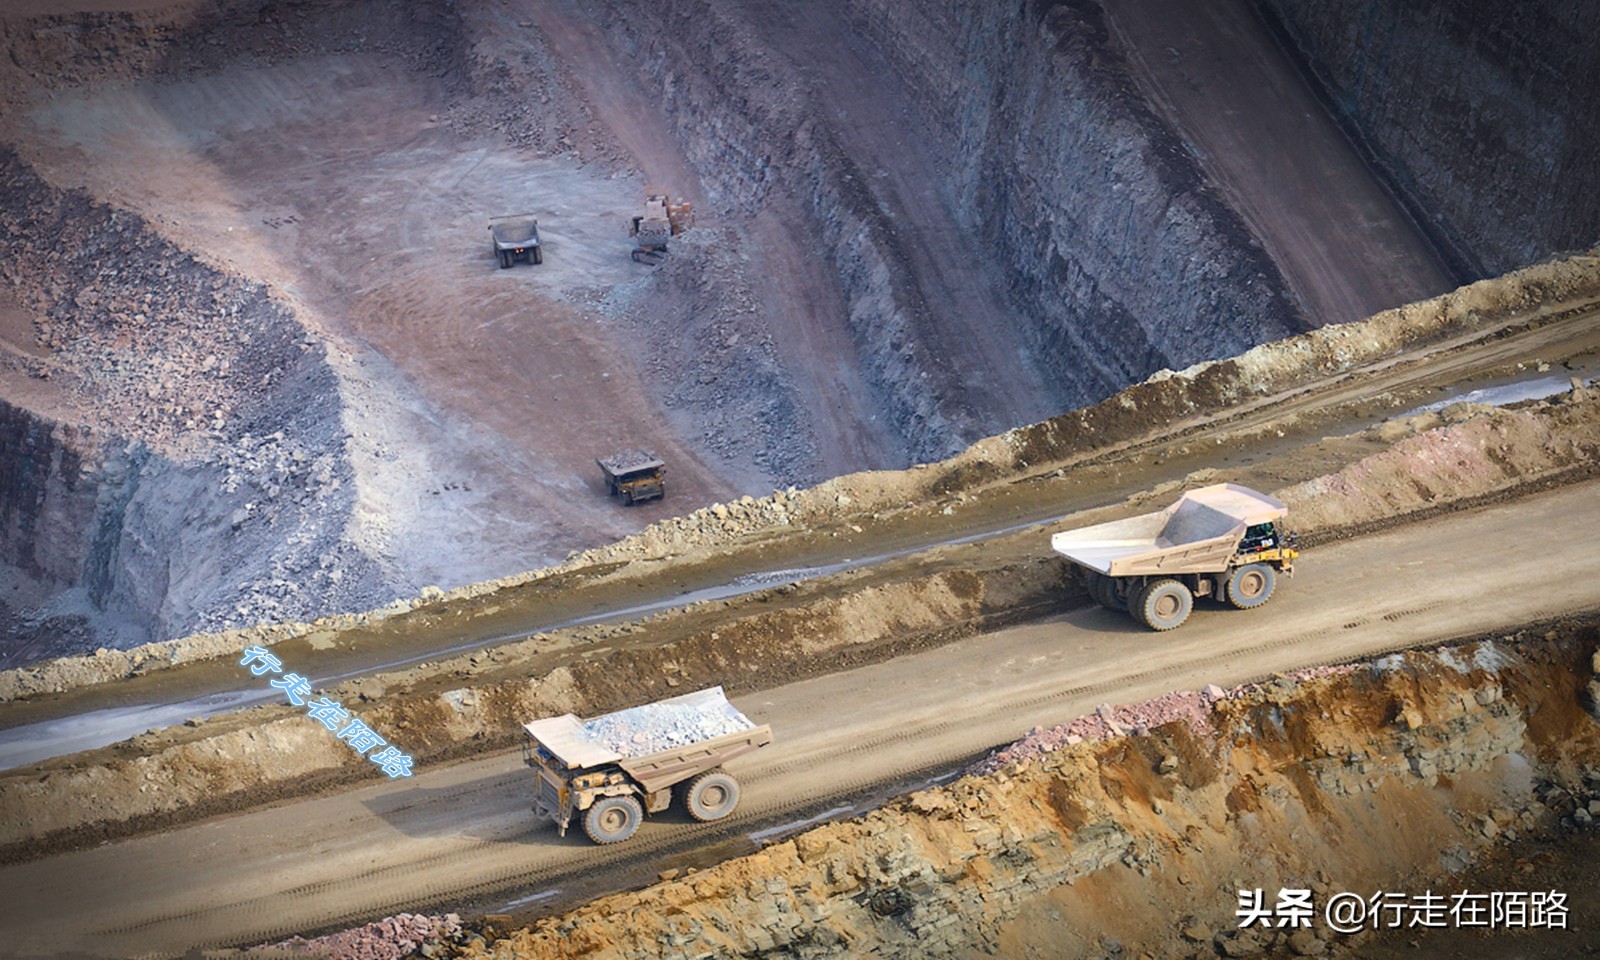 米尔内钻石坑：共挖出15亿吨矿石，日产钻石3万克拉